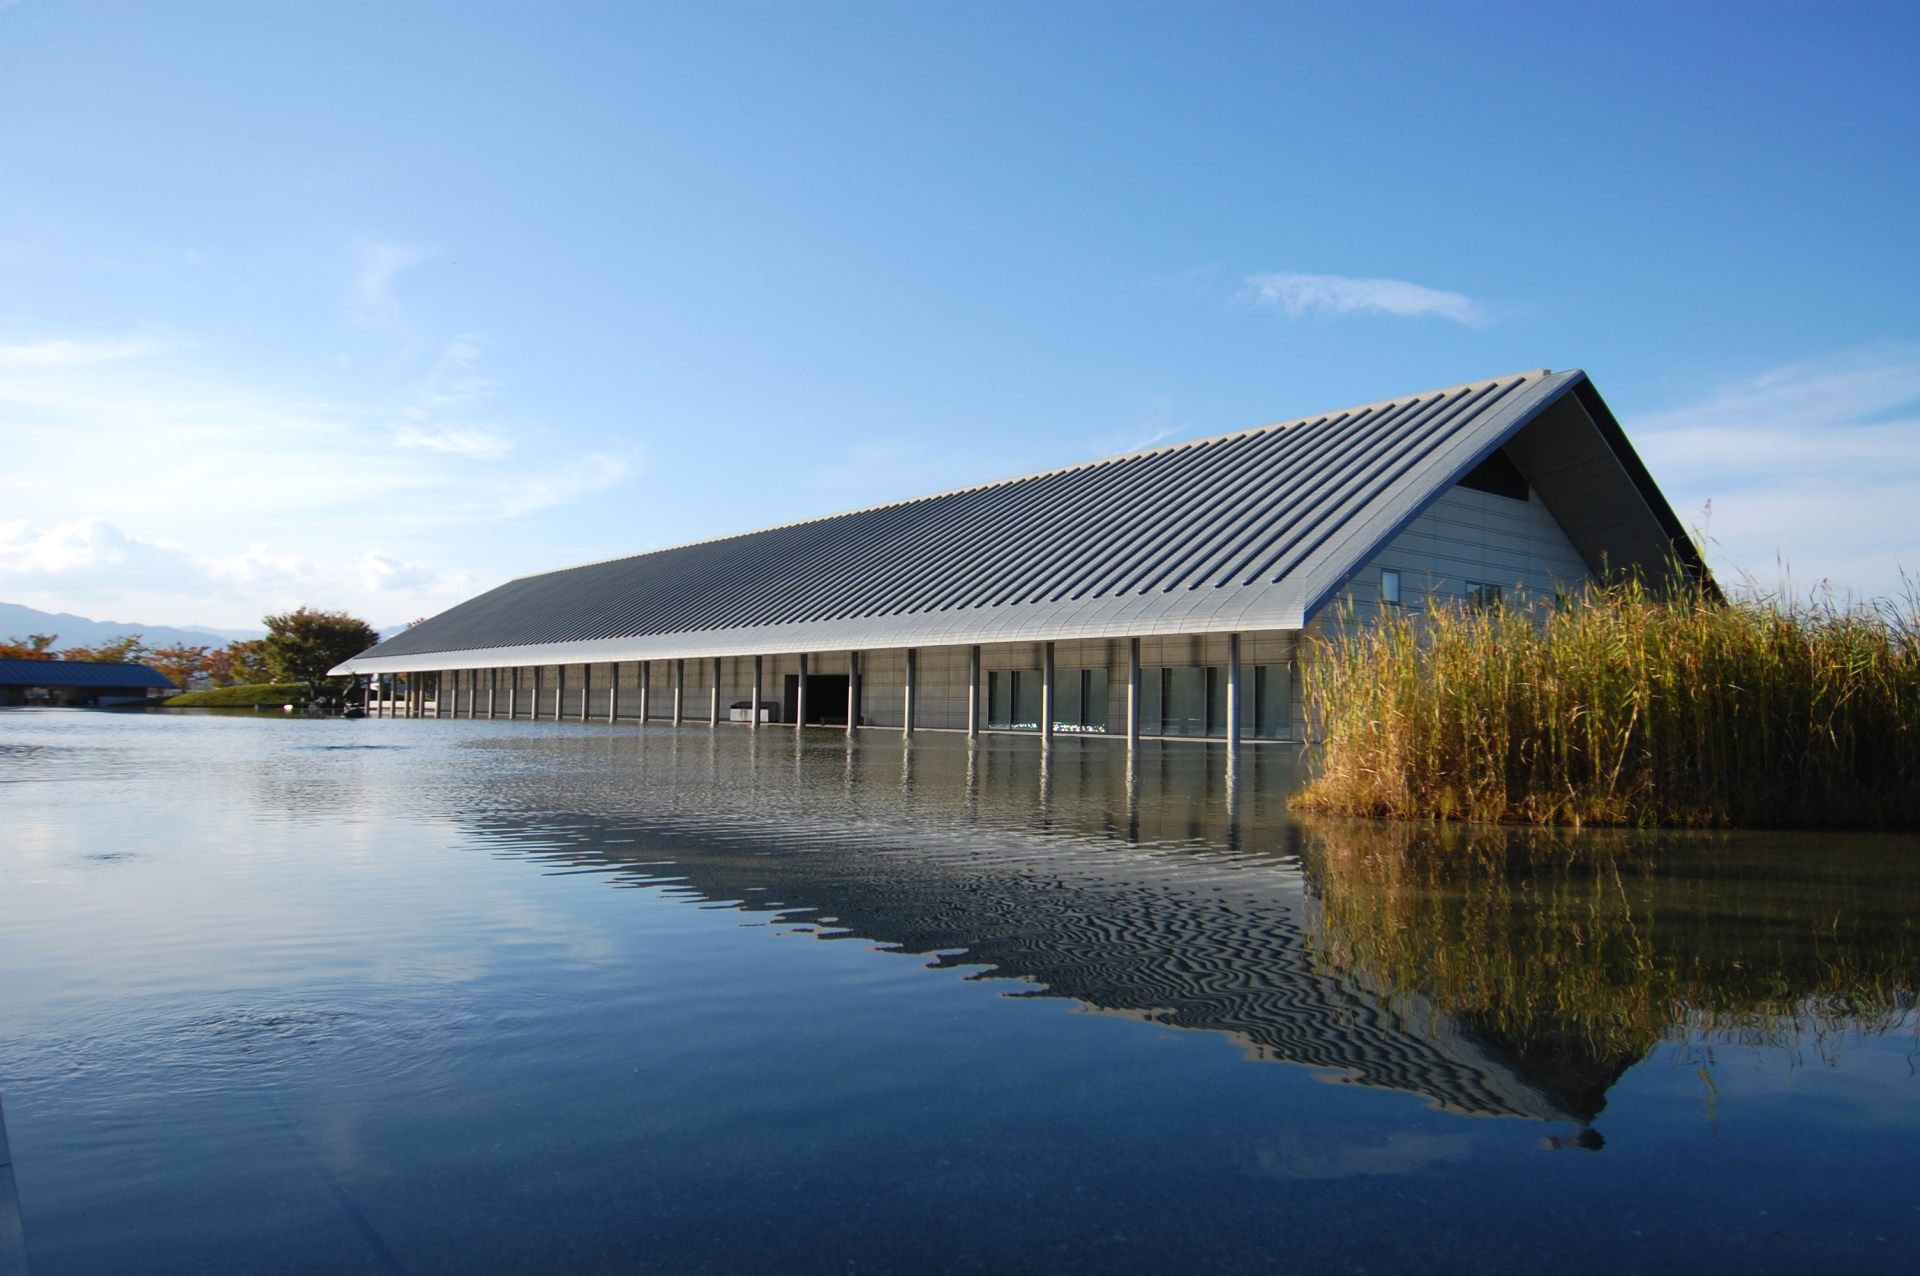 琵琶湖のほとりに佇む「佐川美術館」。水と近代建築が融合したモダンな佇まいが目を惹きます。